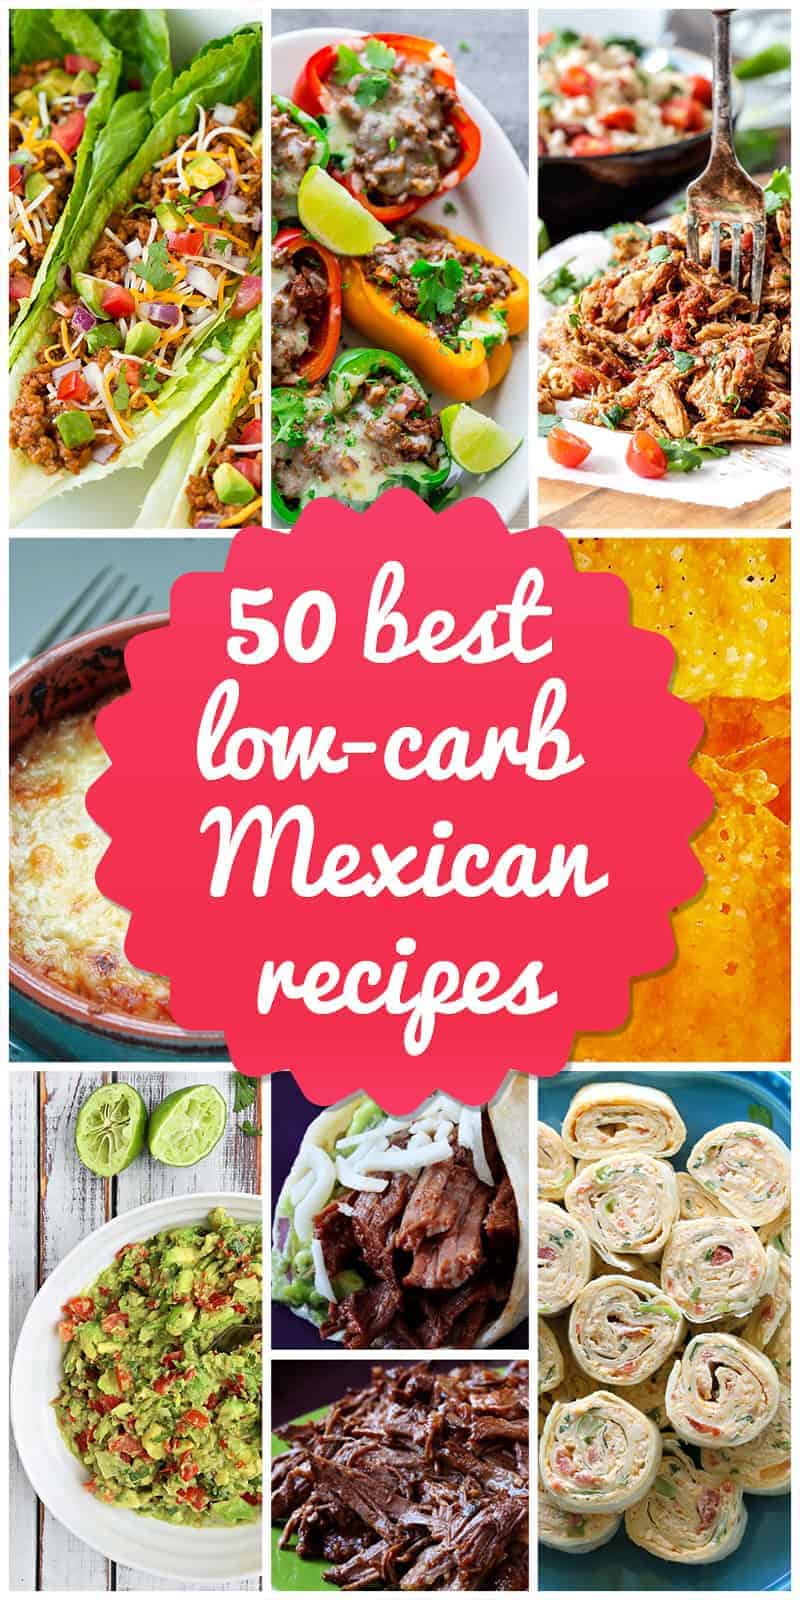 Low-Carb Mexican Recipes